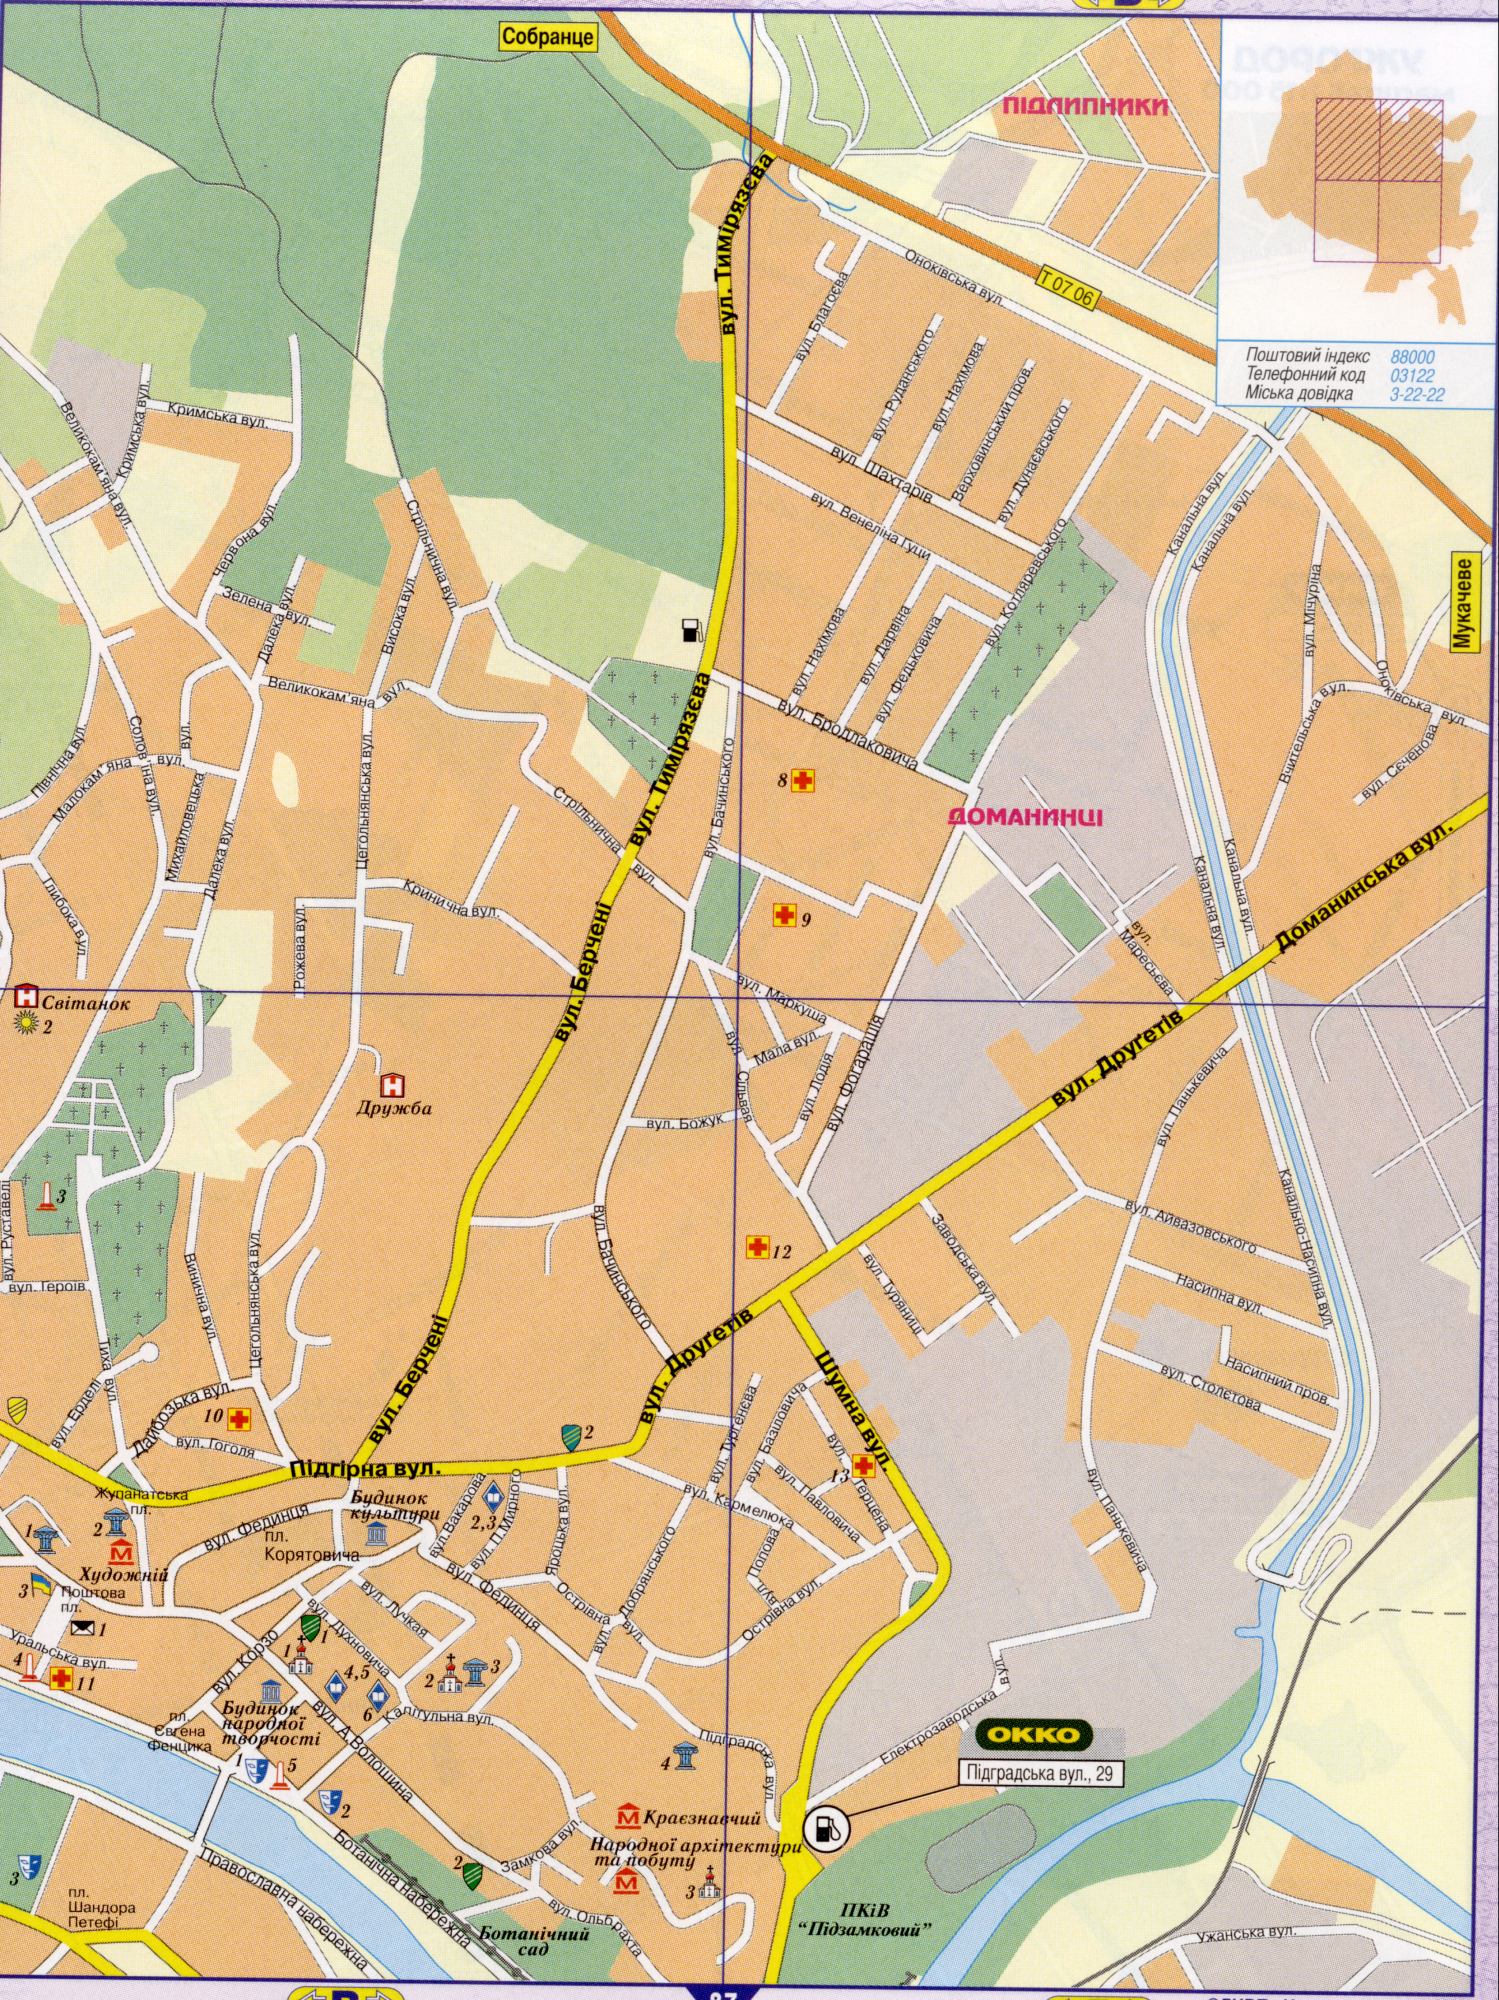 Karte von Uschhorod detailliert (die Karte von Ukraine Uzhgorod) in 1 cm von 150 Metern. Laden Sie eine detaillierte Karte von Straßen, B0